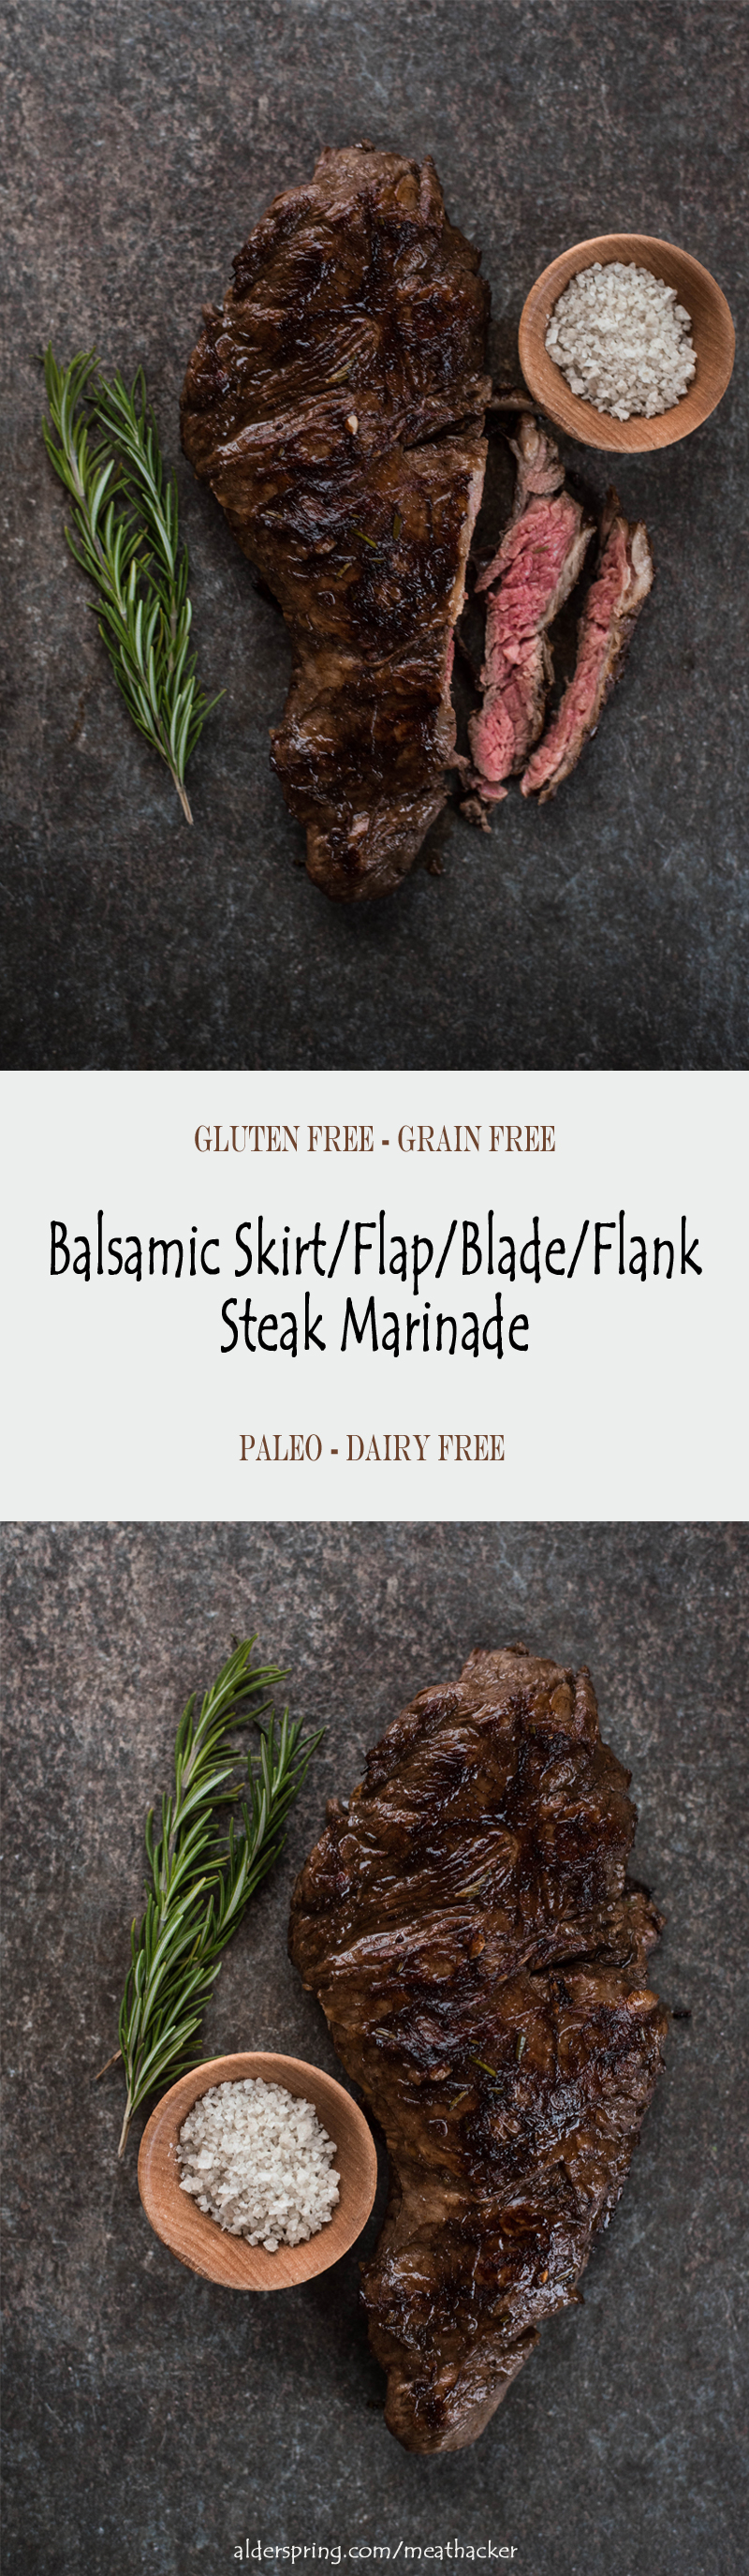 Balsamic Skirt/Flap/Blade/Flank Steak Marinade